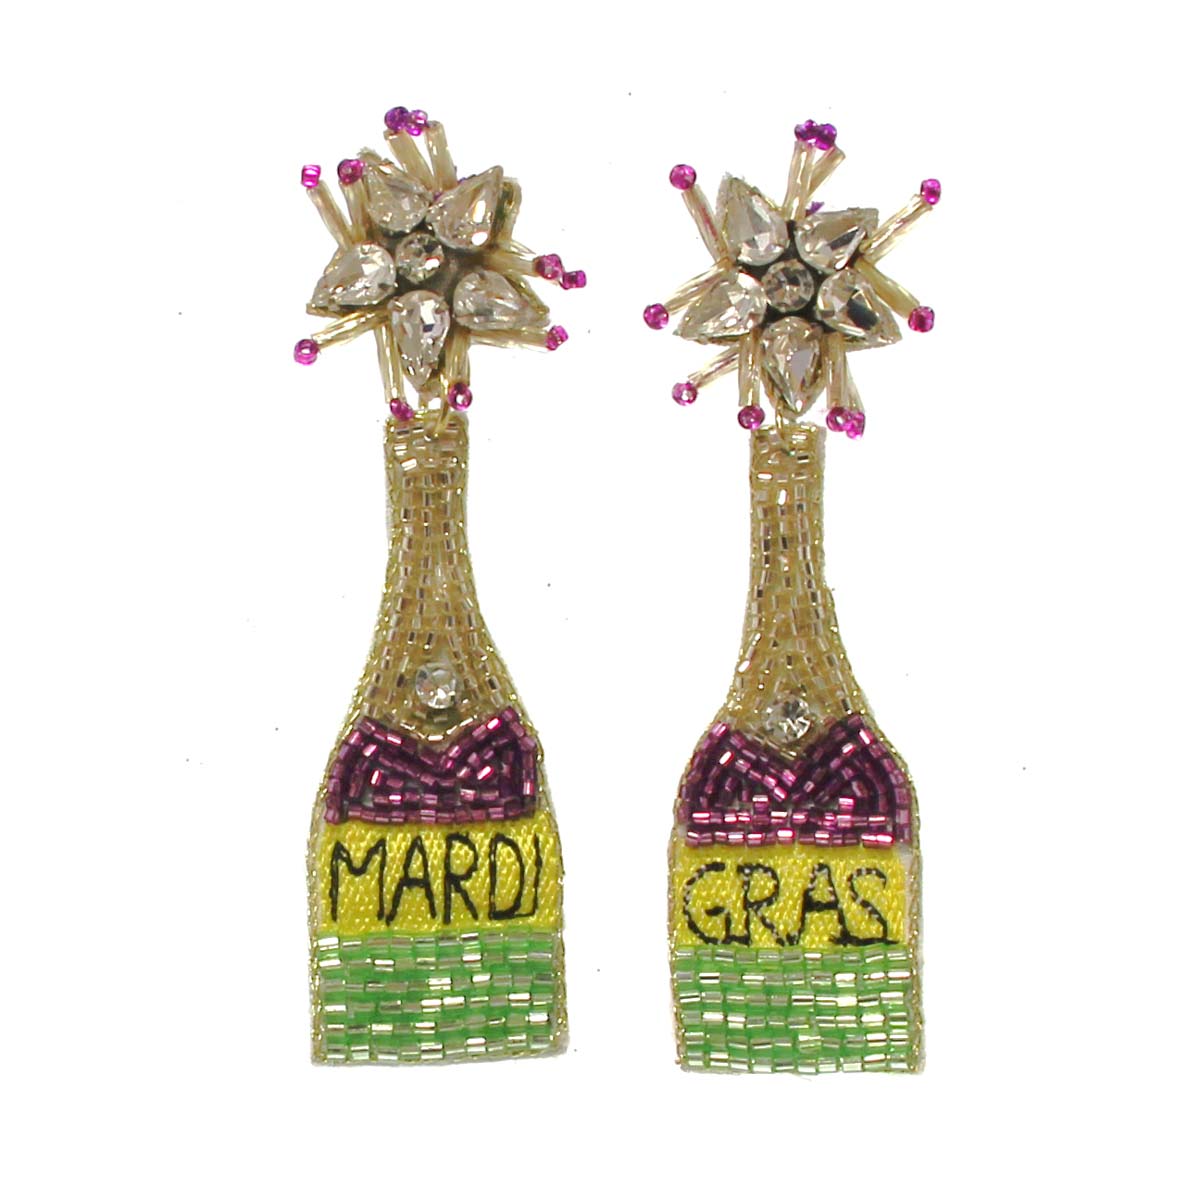 Champagne Bottle Earrings, 3"